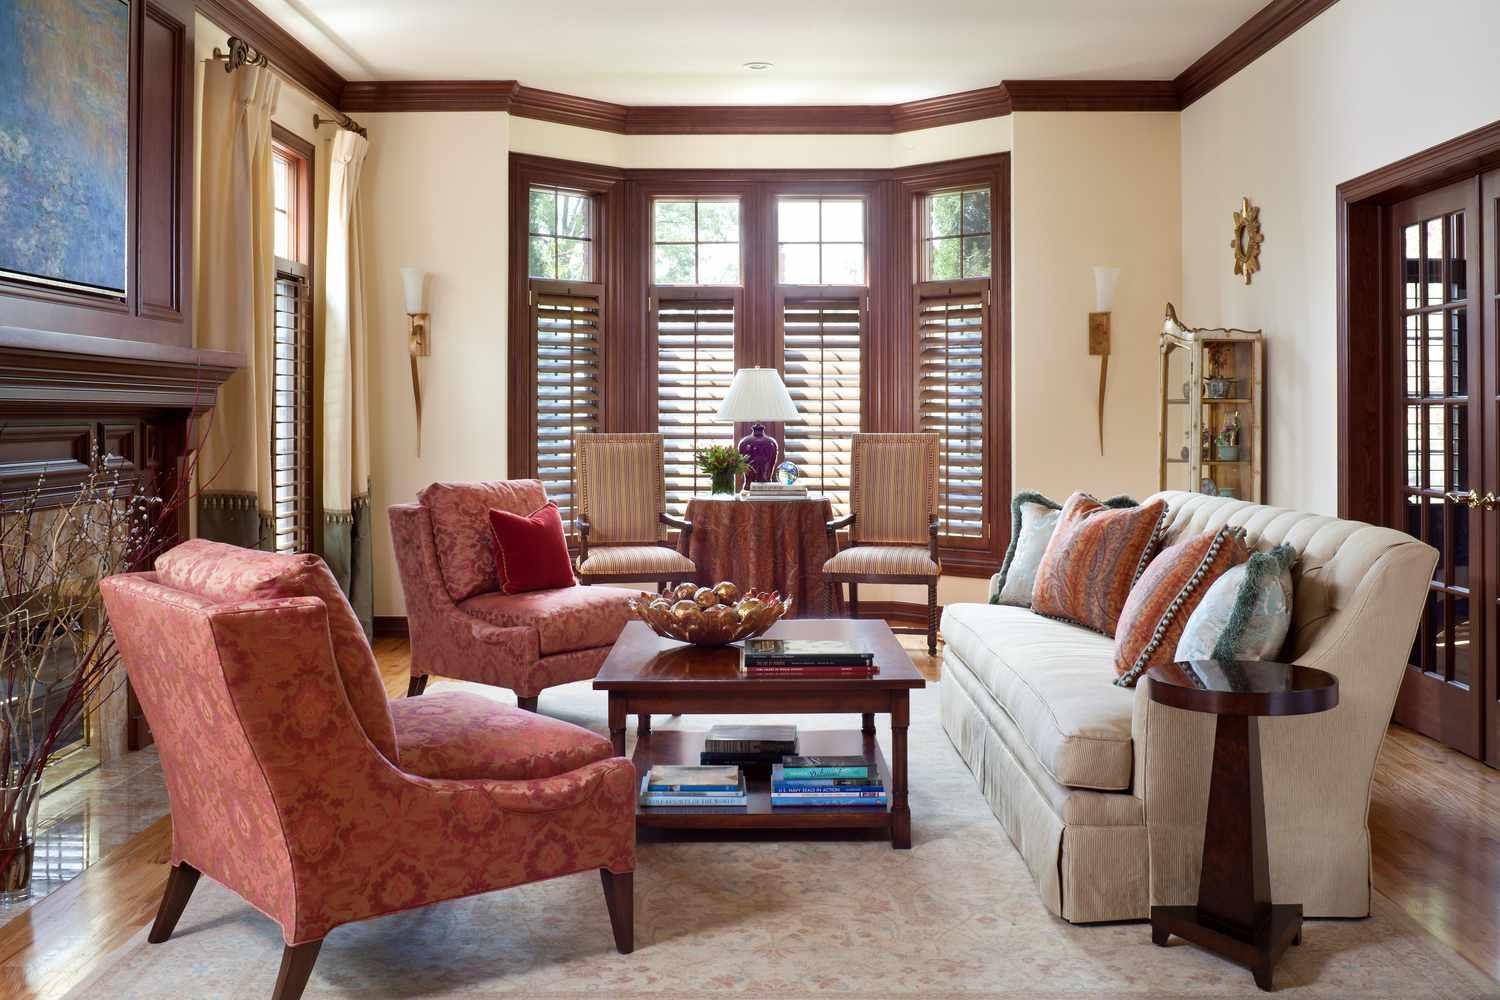 Ein Wohnzimmer hat pfirsichfarbene Wände, die mit reichem, fast rotem Holz verkleidet sind. Auch die Türöffnungen sind mit Holz verkleidet